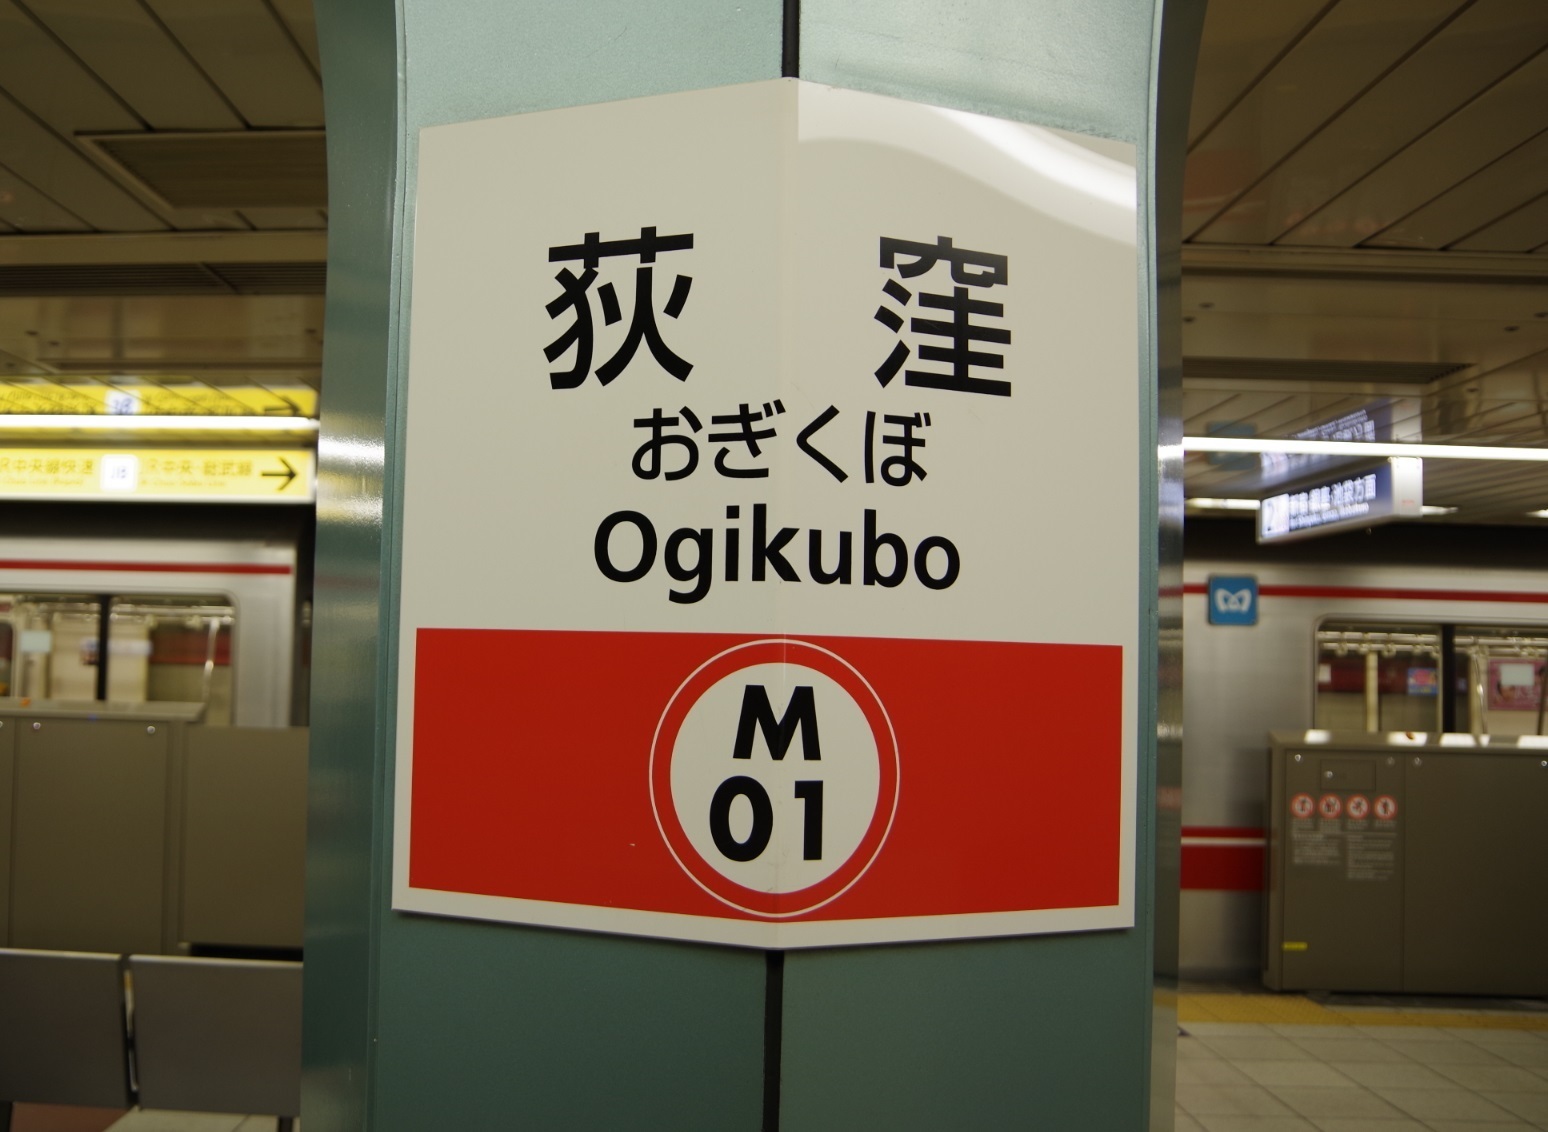 駅名板紹介: 東京メトロ丸ノ内線の「荻窪駅」の駅名票です。